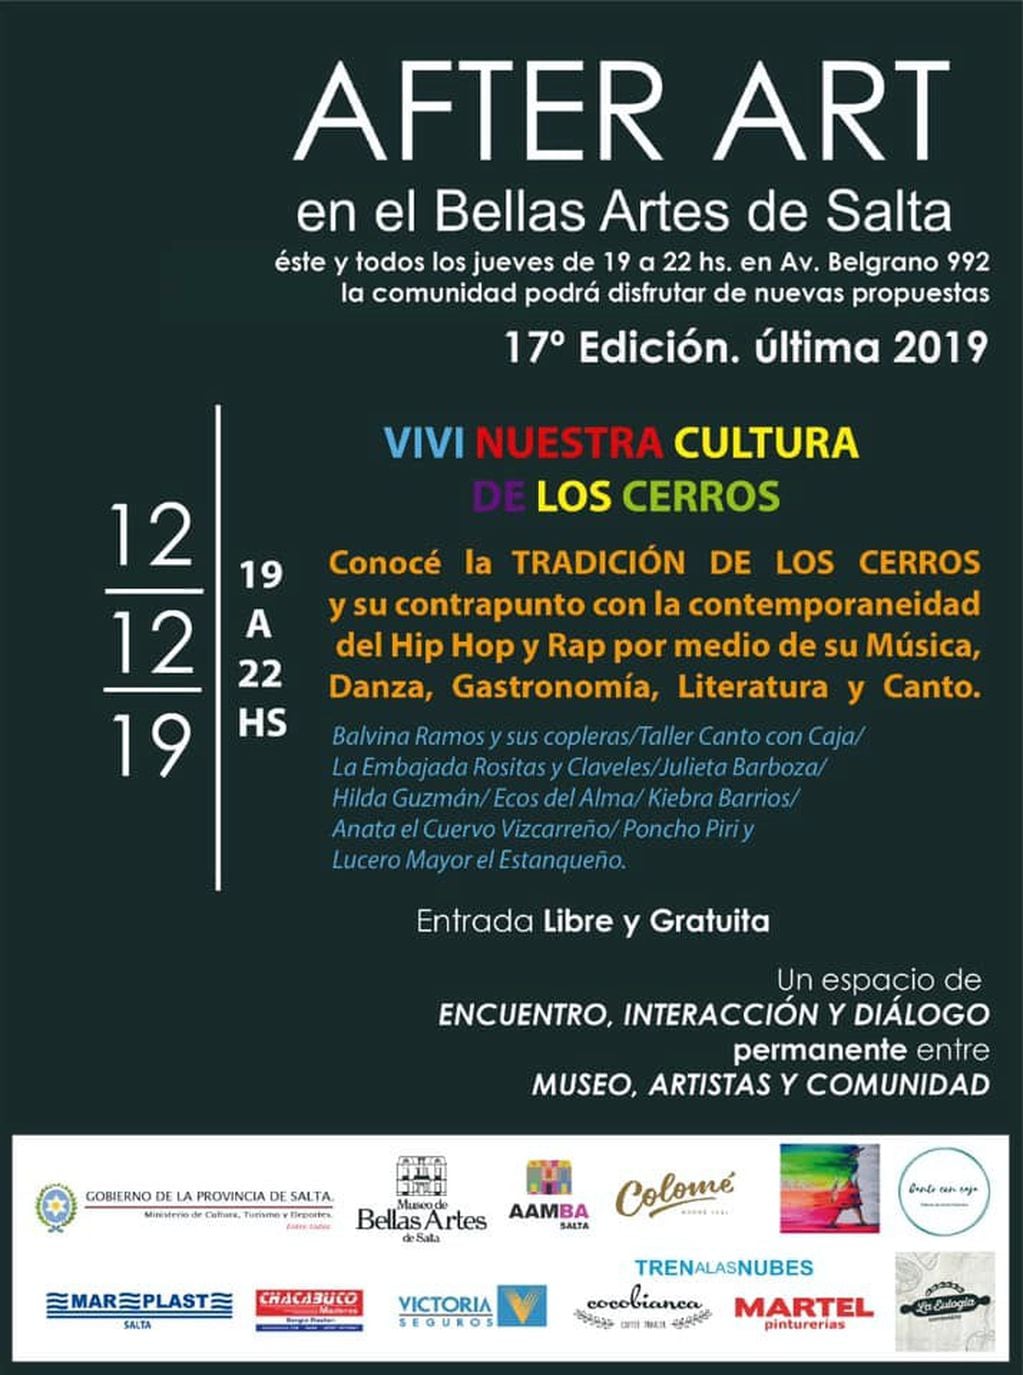 Última edición del After Art (Facebook Museo Bellas Artes Salta)